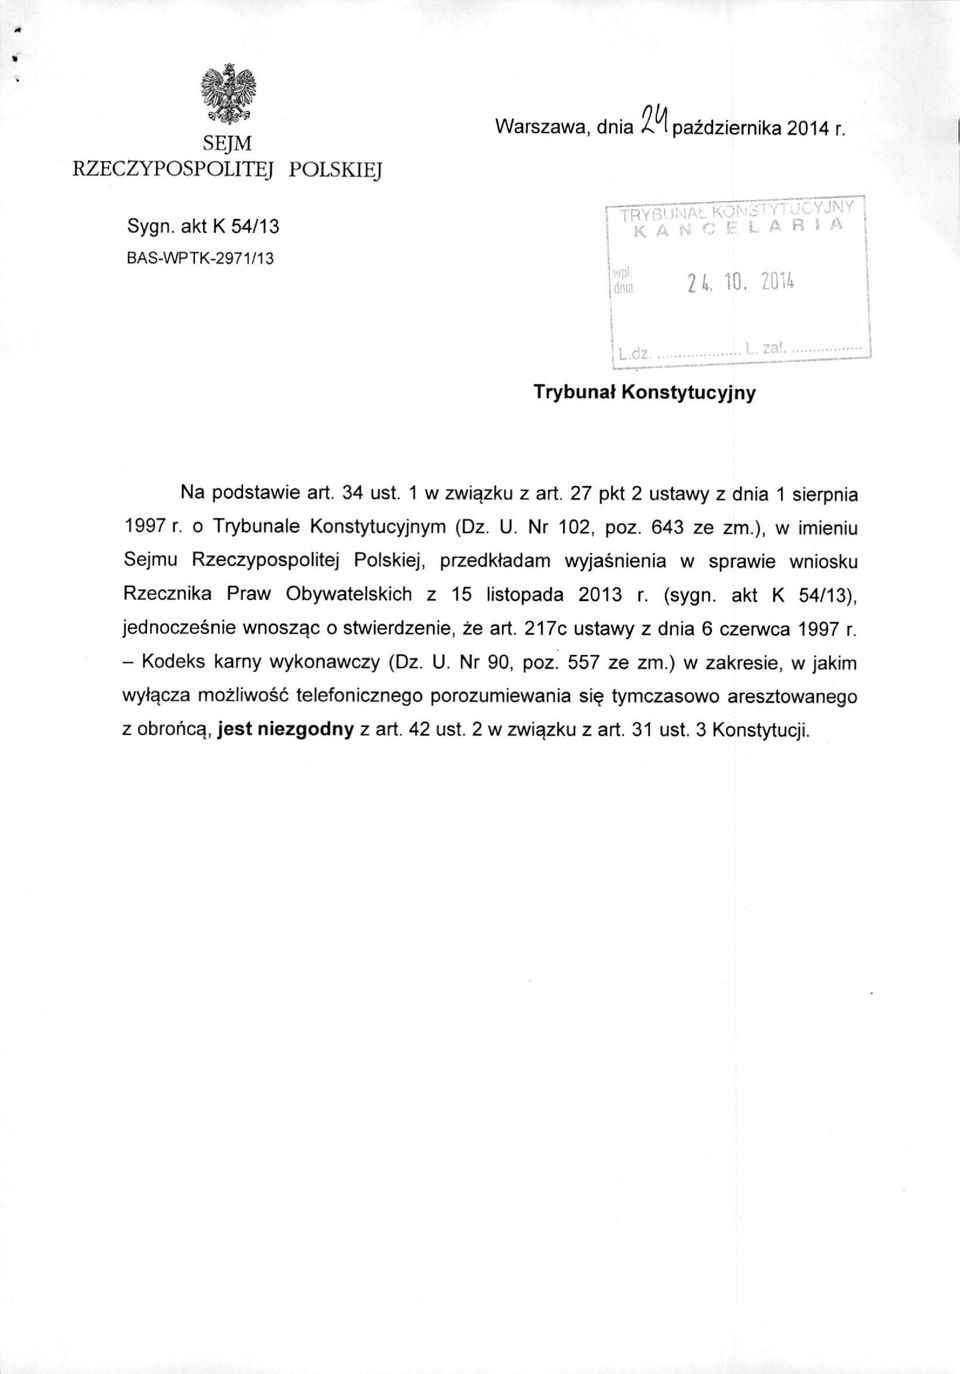 ), w imieniu Sejmu Rzeczypospolitej Polskiej, przedkladam wyjasnienia w sprawie wniosku Rzecznika Praw Obywatelskich z 15 listopada 2013 r. (sygn.